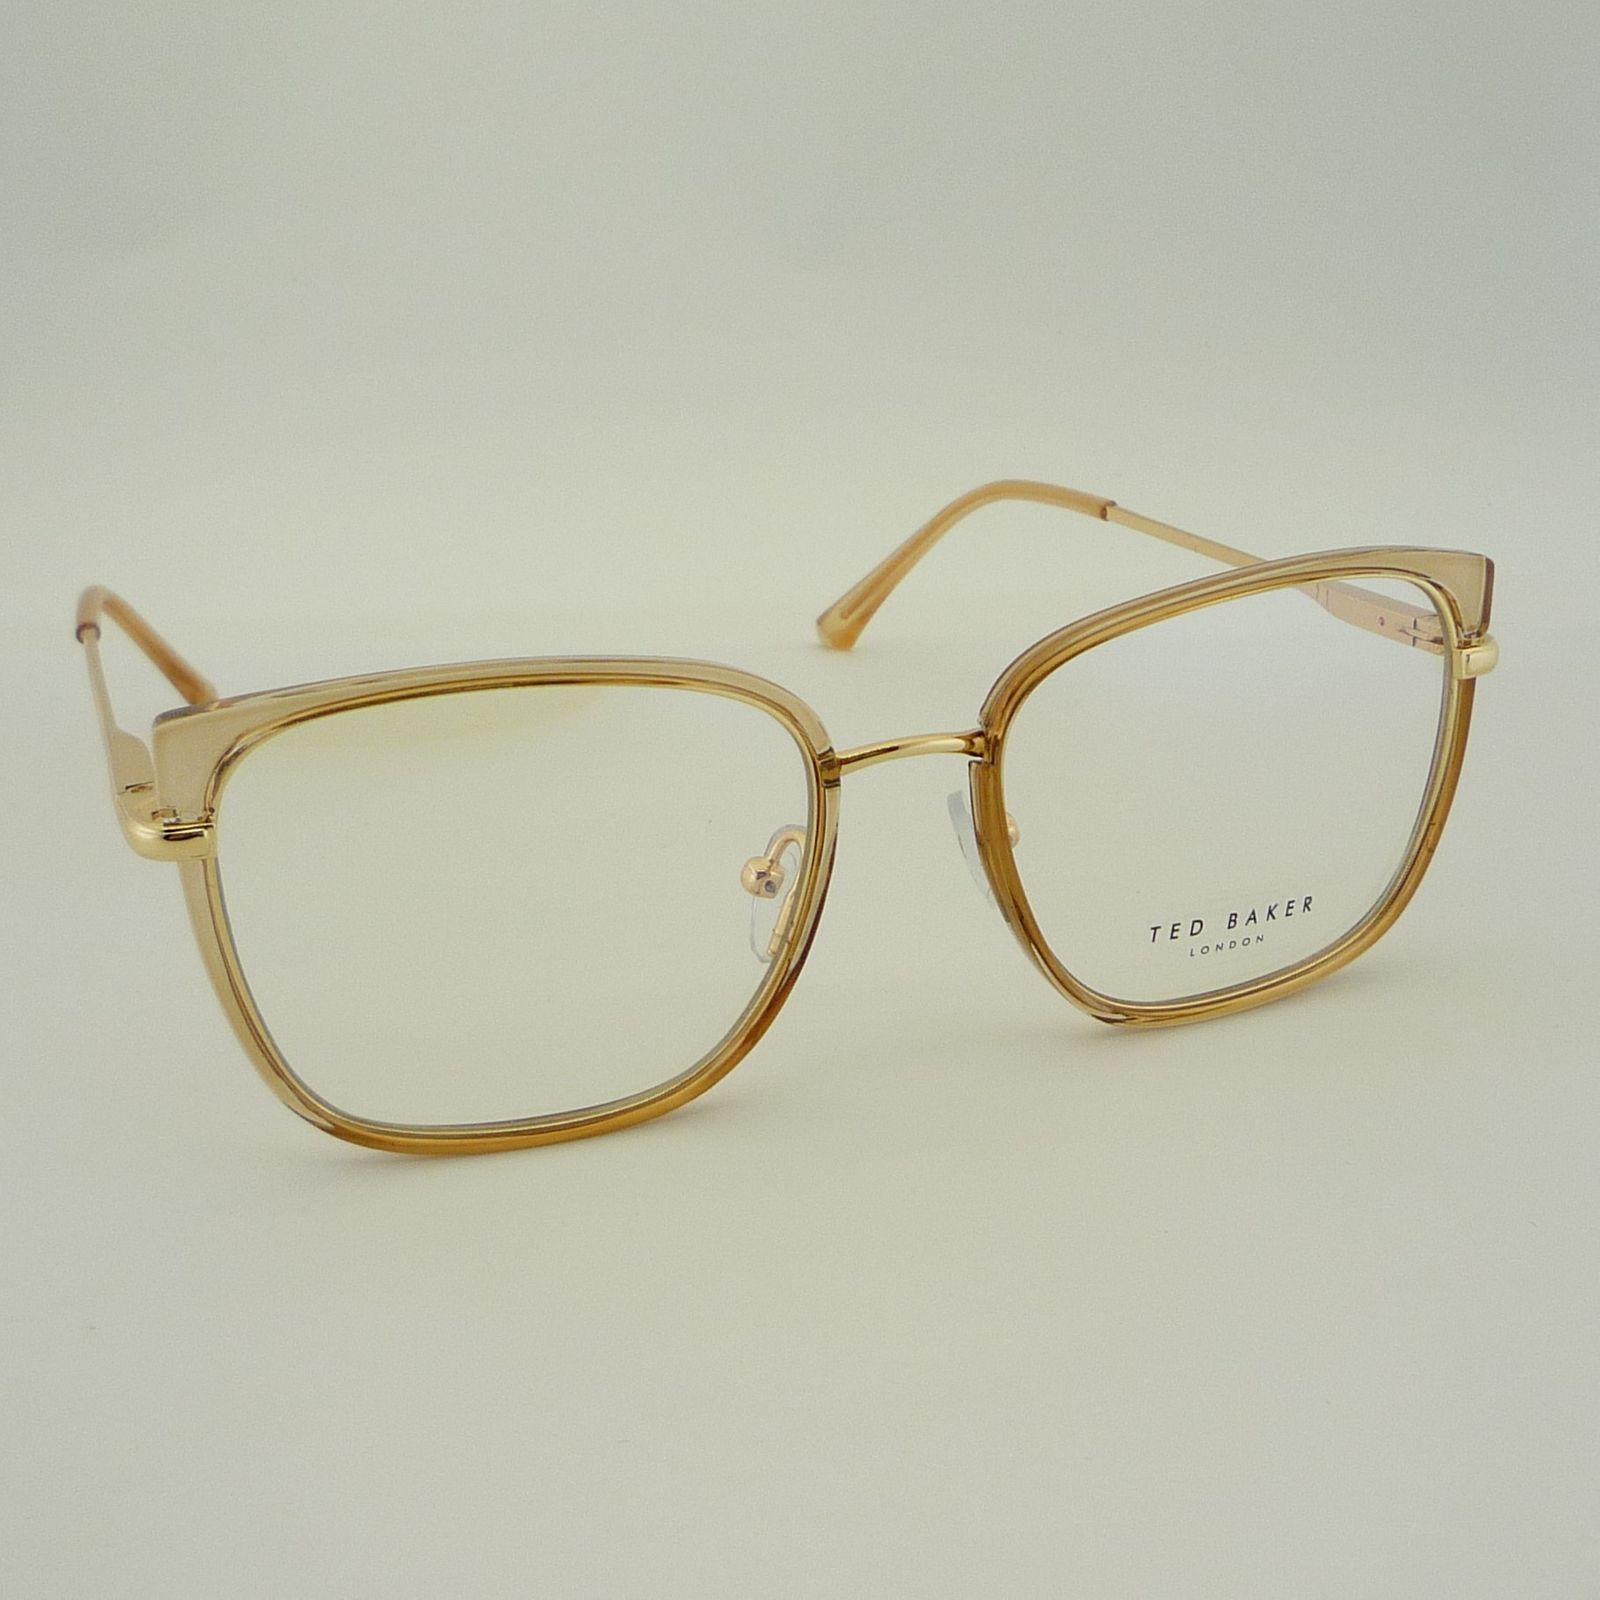 فریم عینک طبی زنانه تد بیکر مدل 95618C9 -  - 4